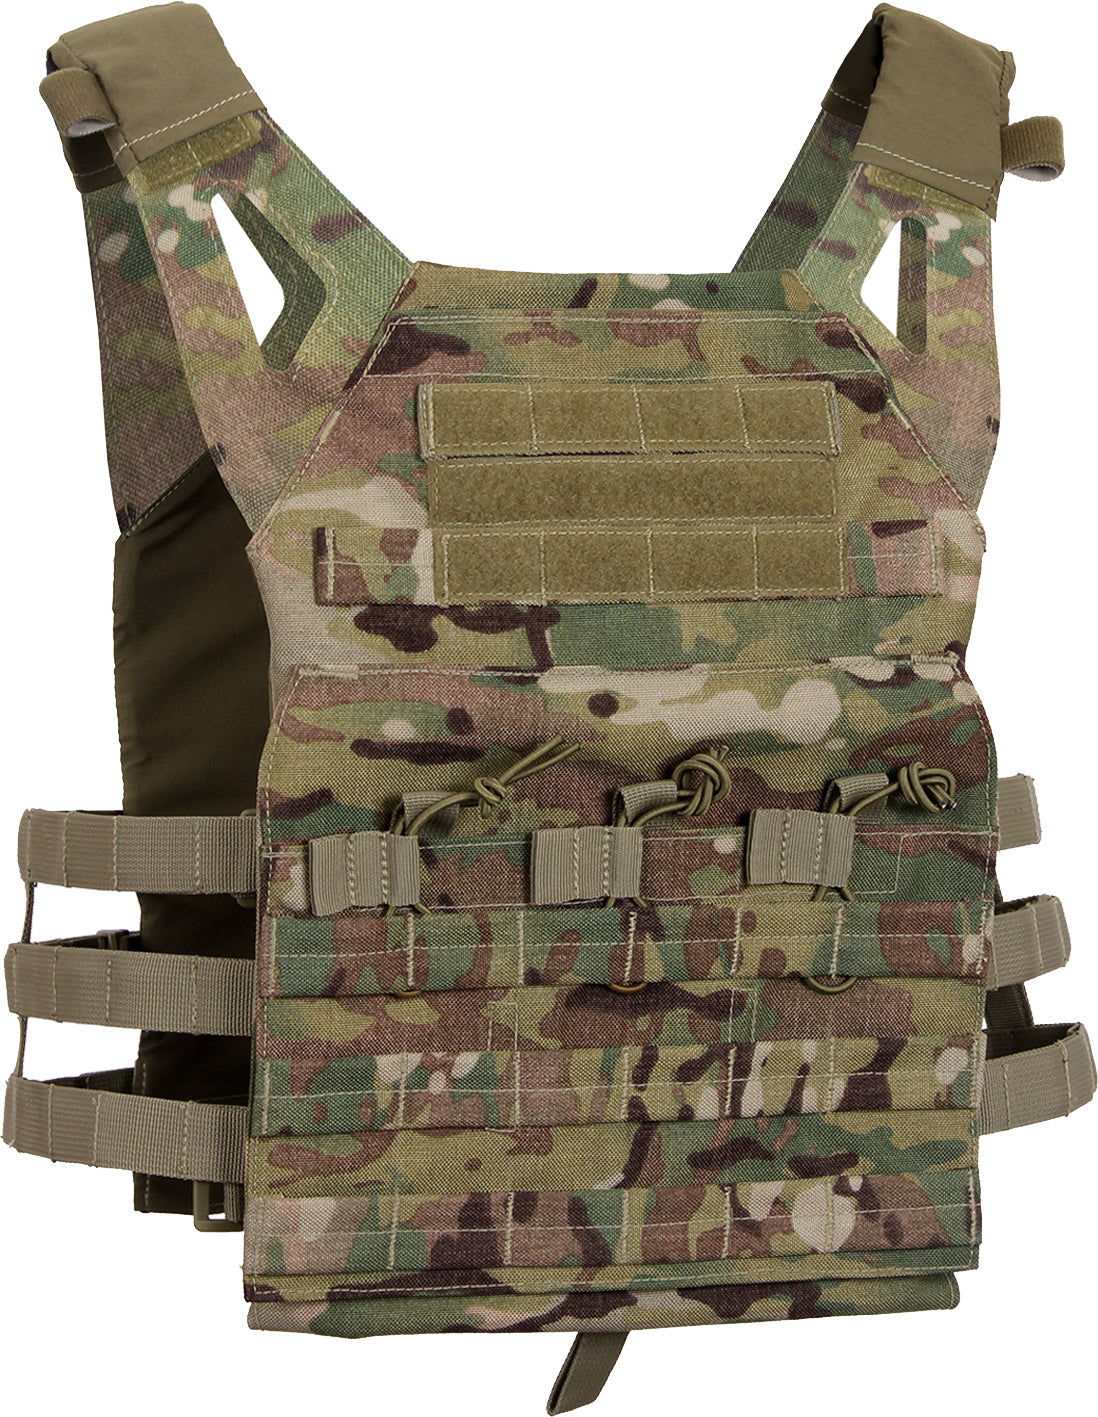 Olive Drab - Lightweight Armor Plate Carrier Vest